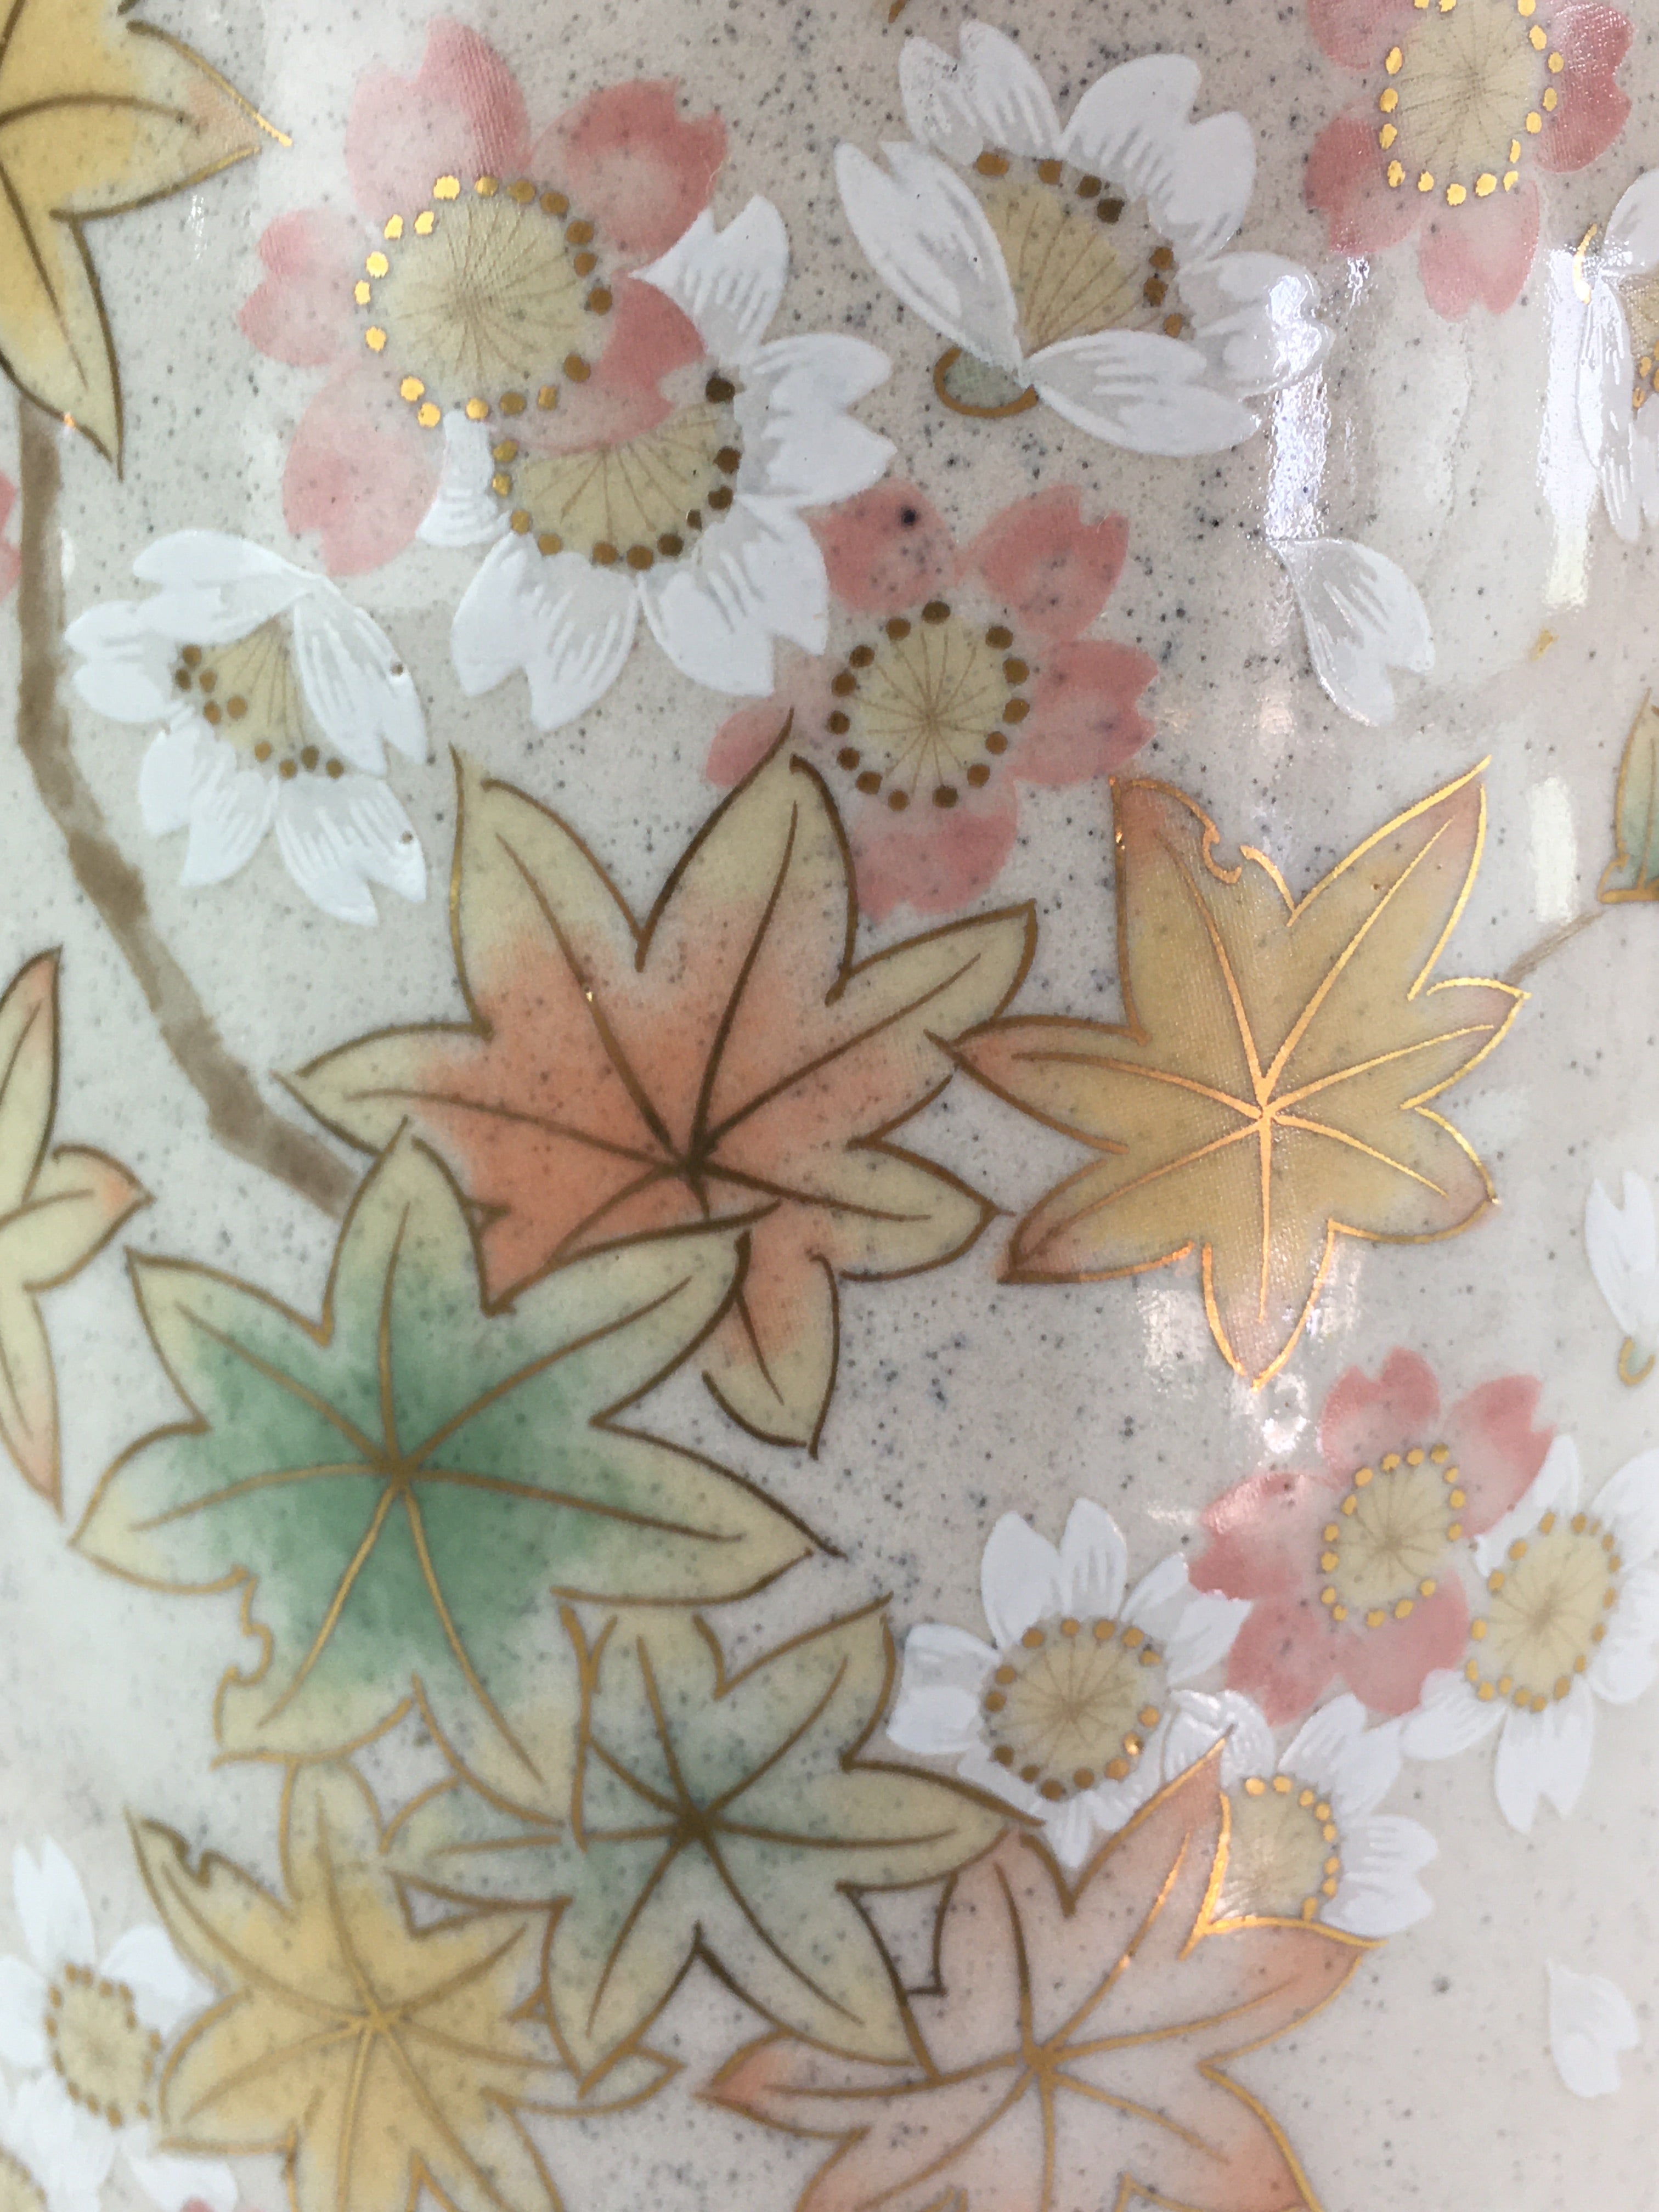 Japanese Ceramic Flower Vase Kabin Vtg Cherry blossoms Pottery Ikebana FK3